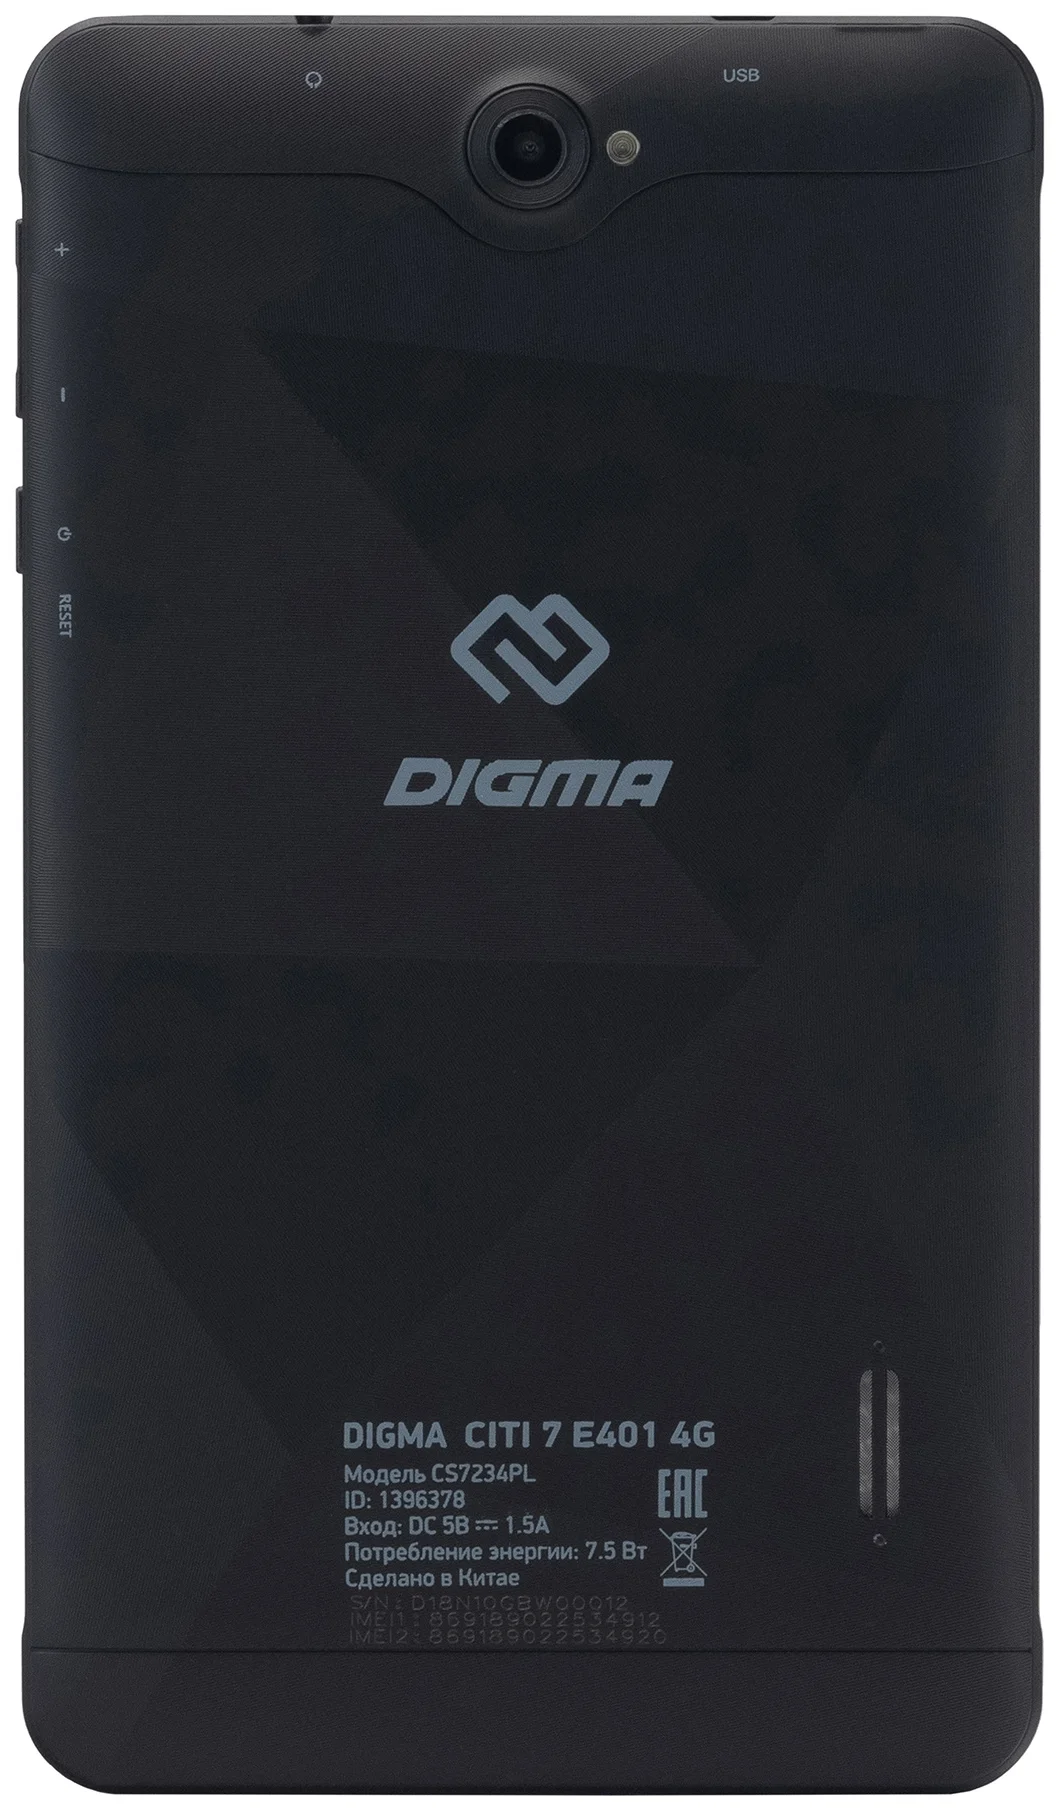 DIGMA CITI 7 E401 4G - процессор: Spreadtrum SC9863